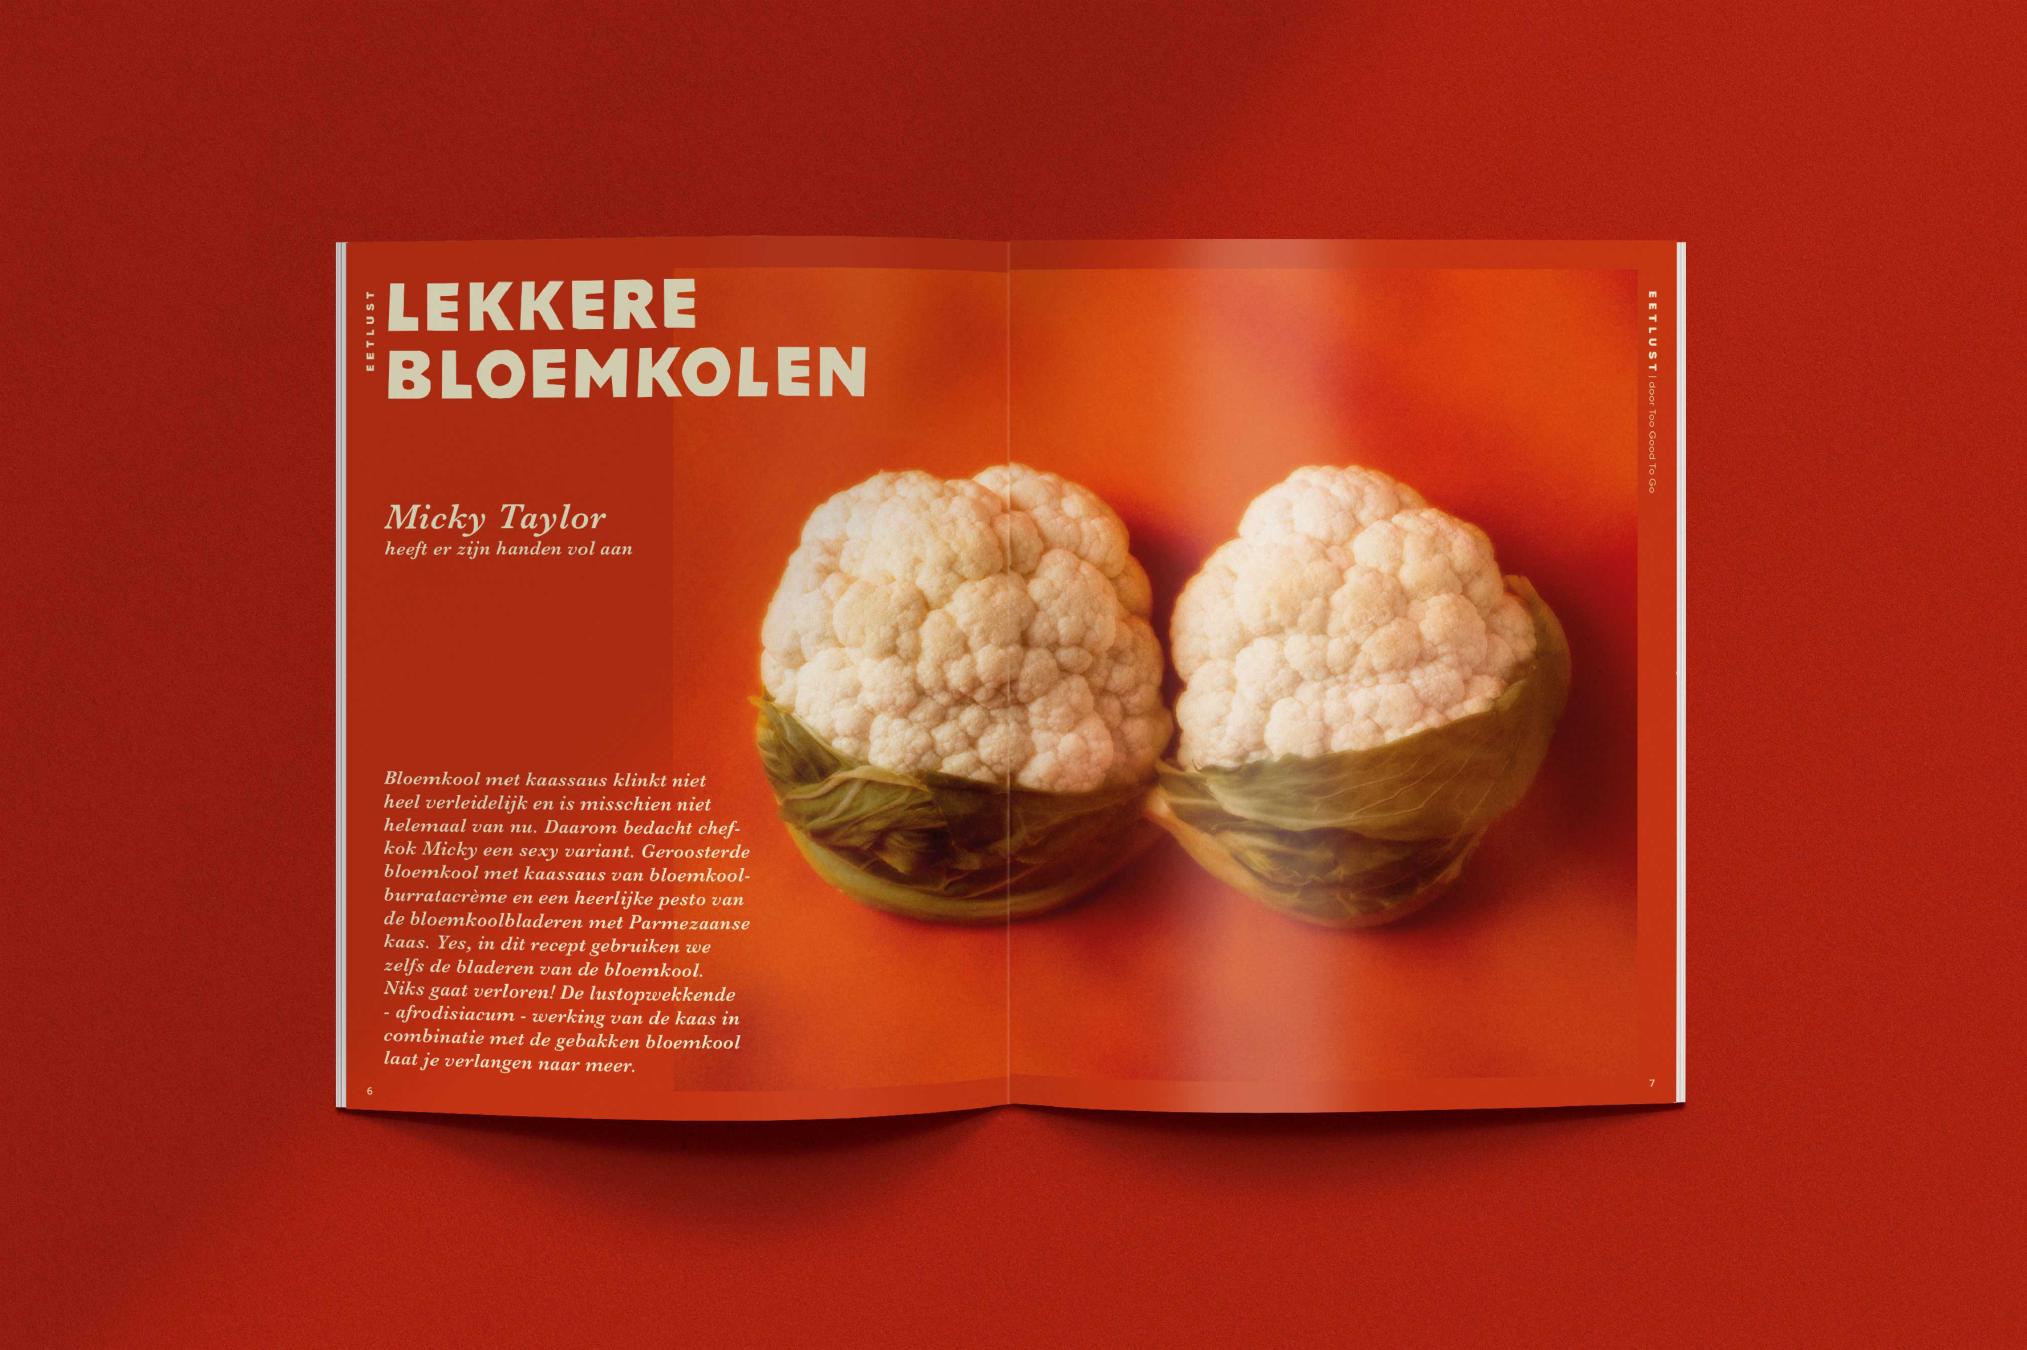 Lekkere bloemkolen - Eetlust magazine - Too Good To Go